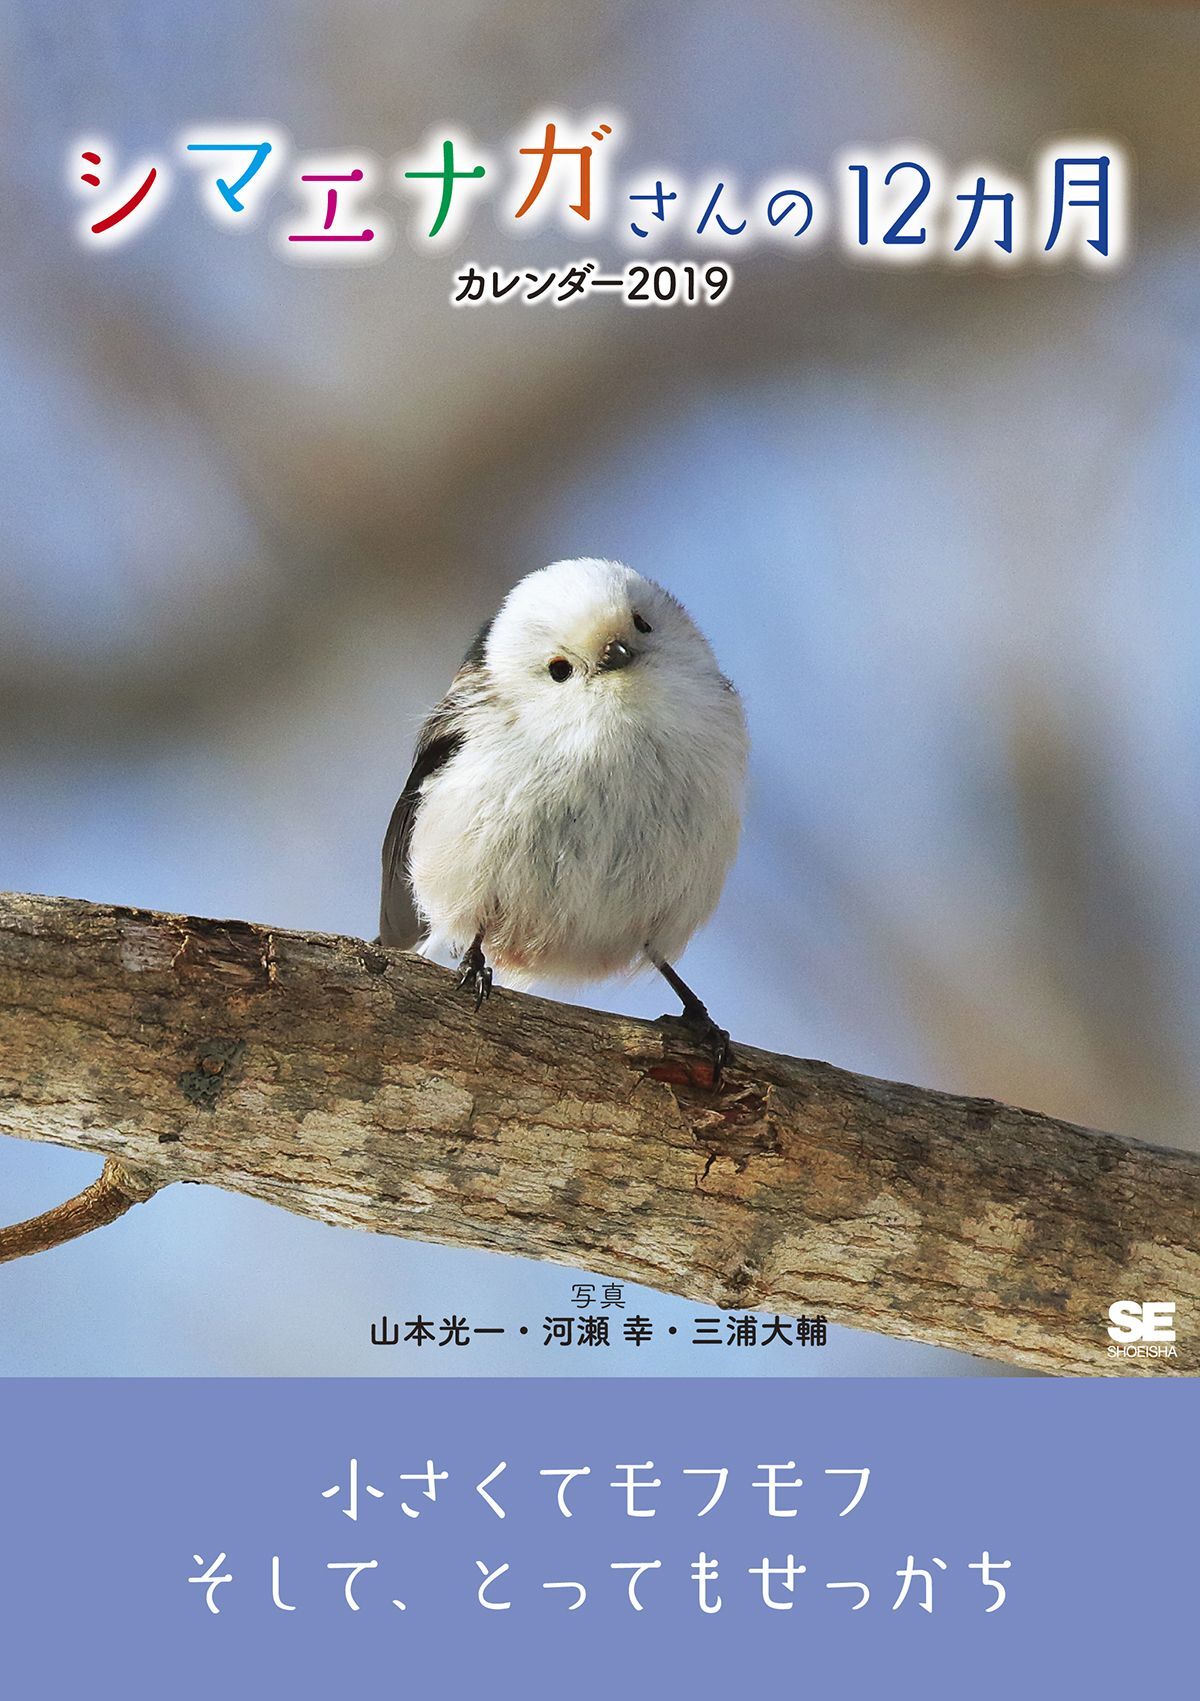 むくむく もふもふな 秋田犬のカレンダー登場 株式会社翔泳社のプレスリリース